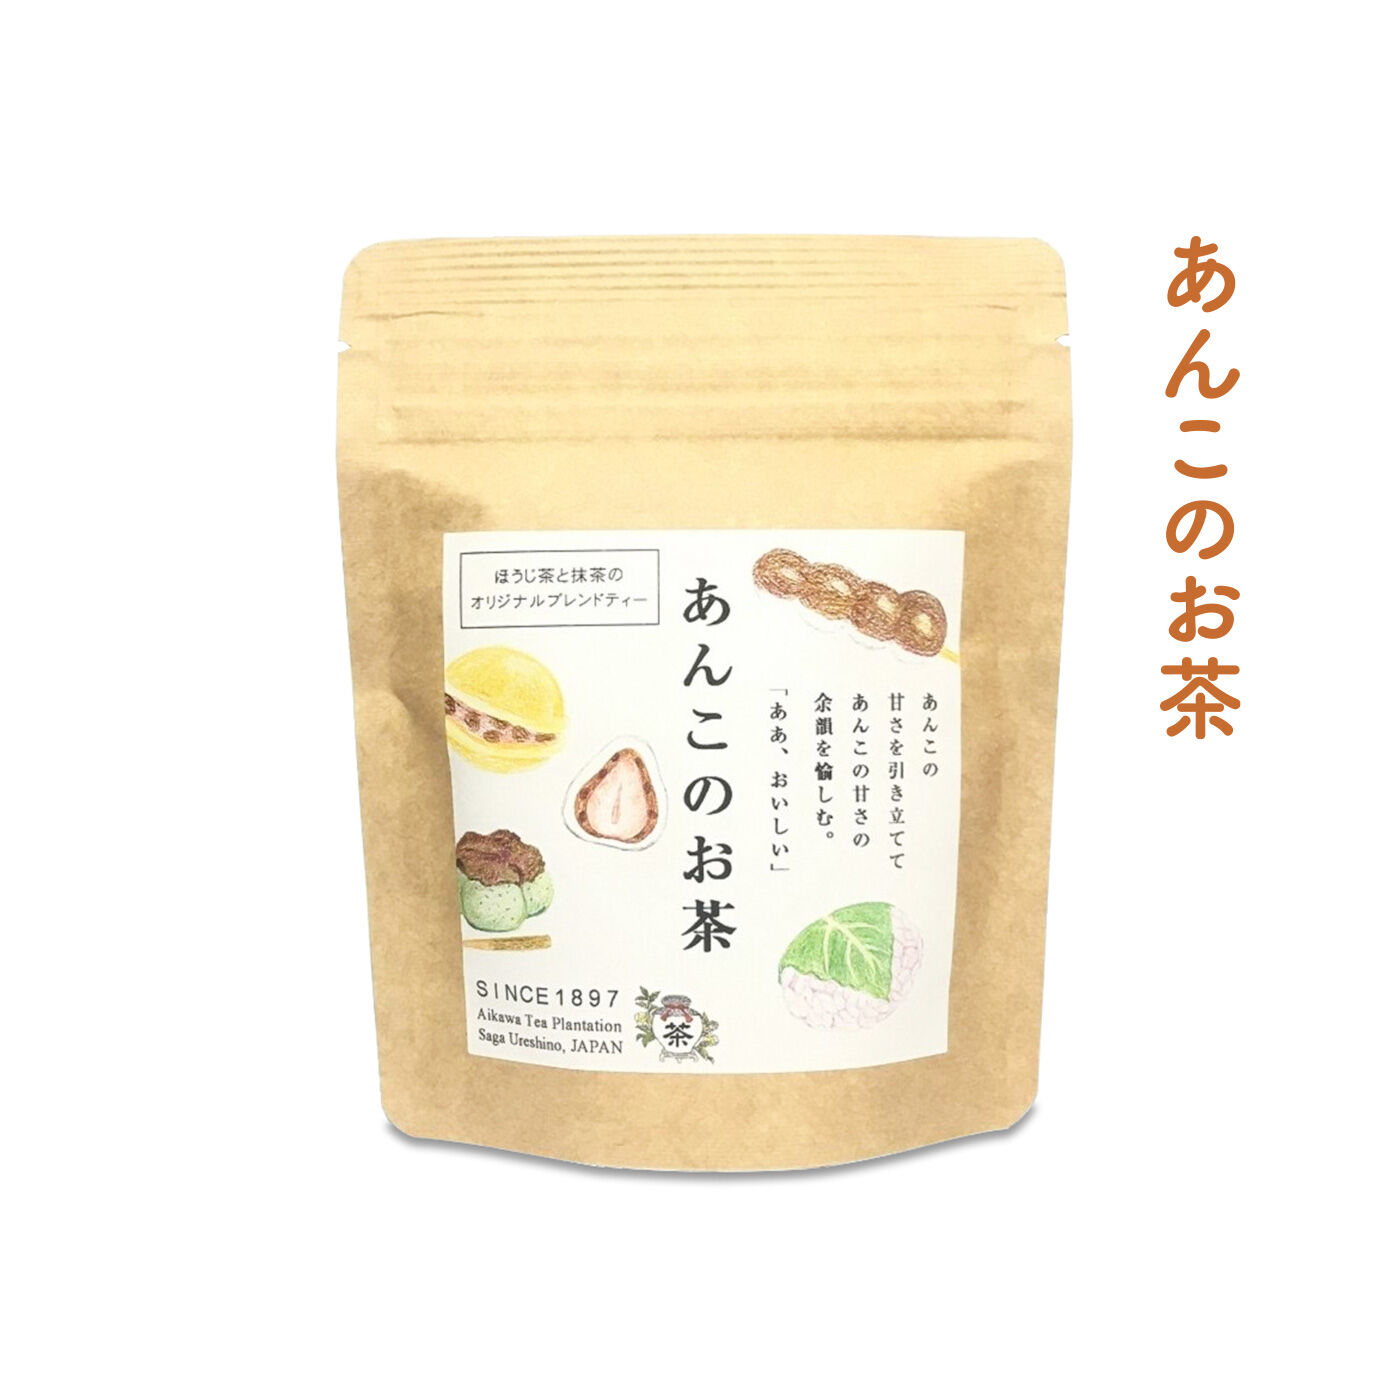 FELISSIMO PARTNERS|佐賀 相川製茶舗 いろんな味わいが楽しい うれしの茶の会（6回予約）|あんこを楽しむための最高の相棒！